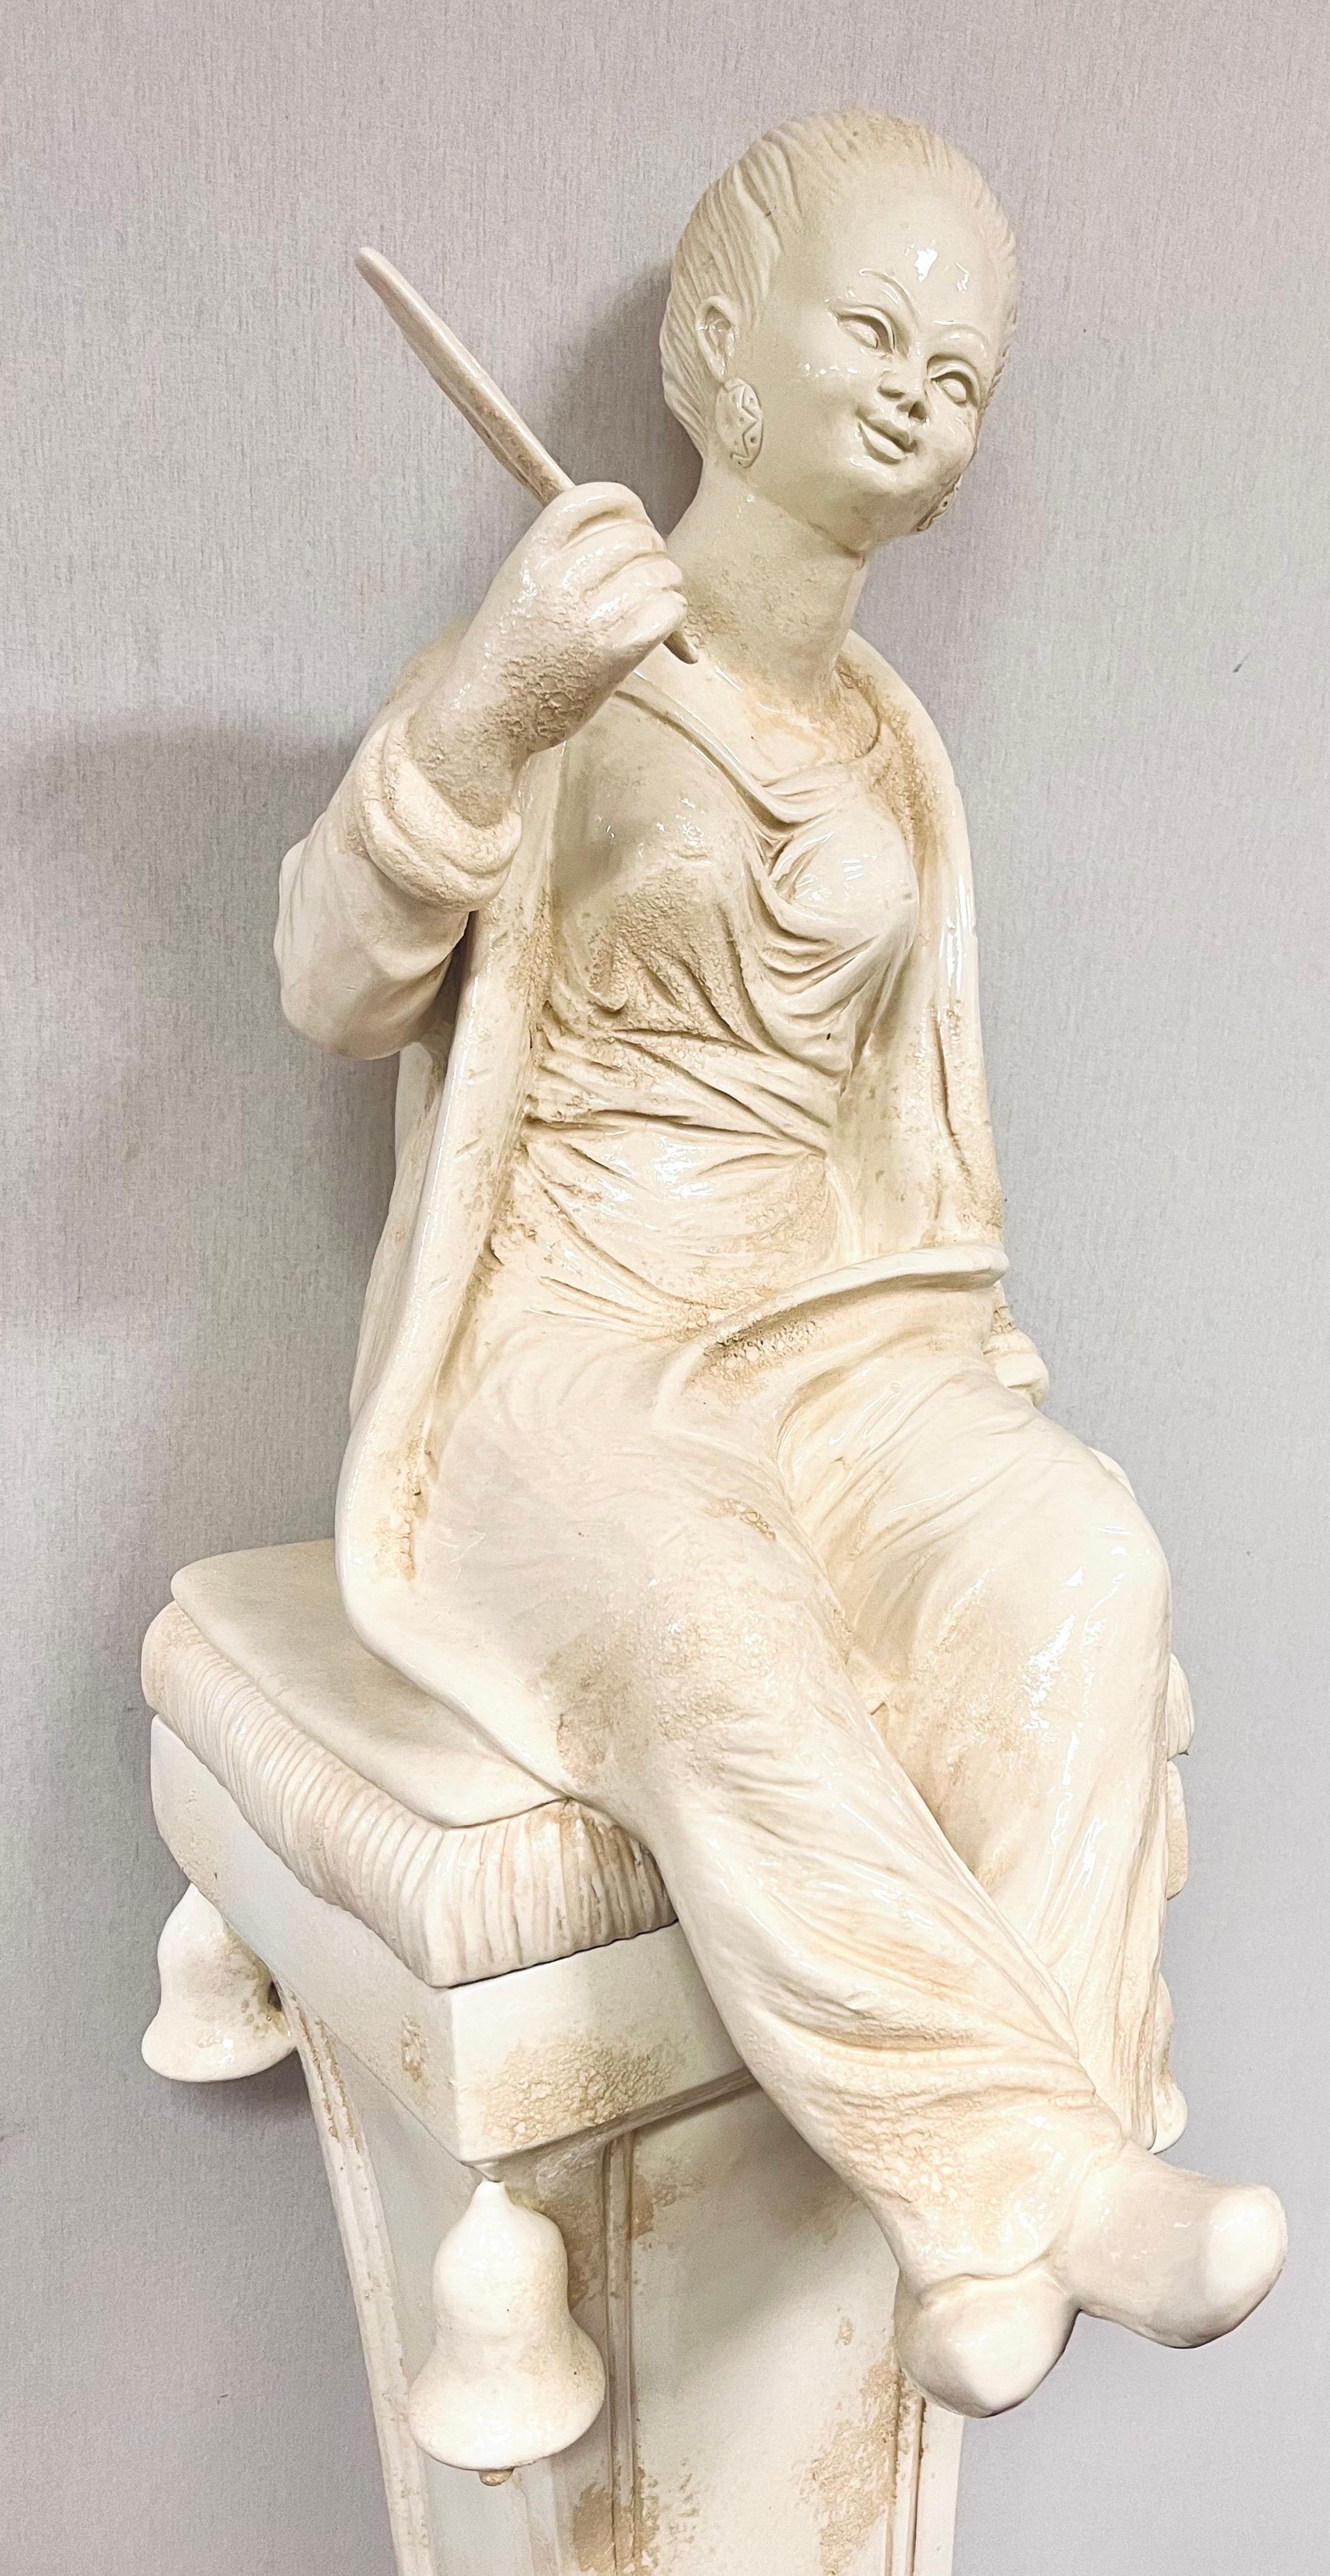 L'exquise sculpture de chinoiserie en porcelaine blanc cassé mesure 70